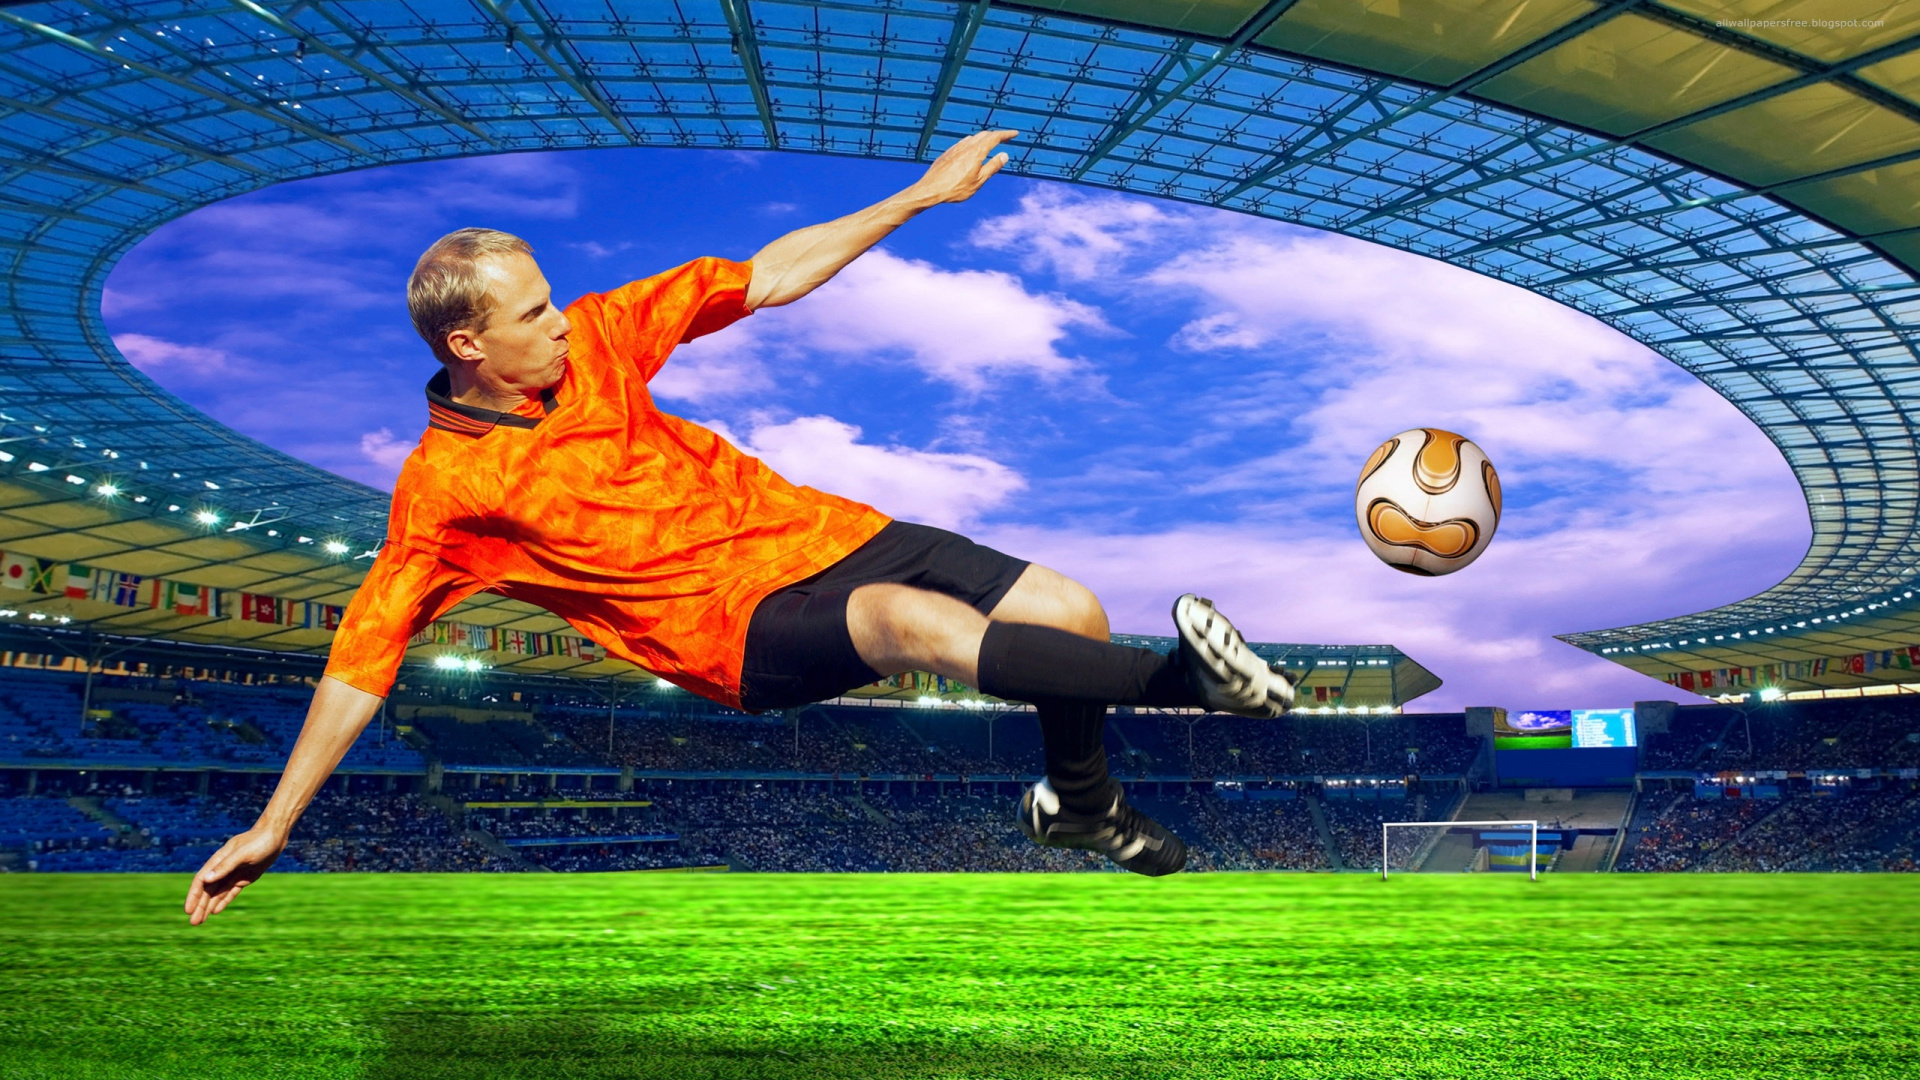 Hombre Con Camiseta Naranja de Fútbol Nike y Pantalones Cortos Negros Jugando al Fútbol. Wallpaper in 1920x1080 Resolution